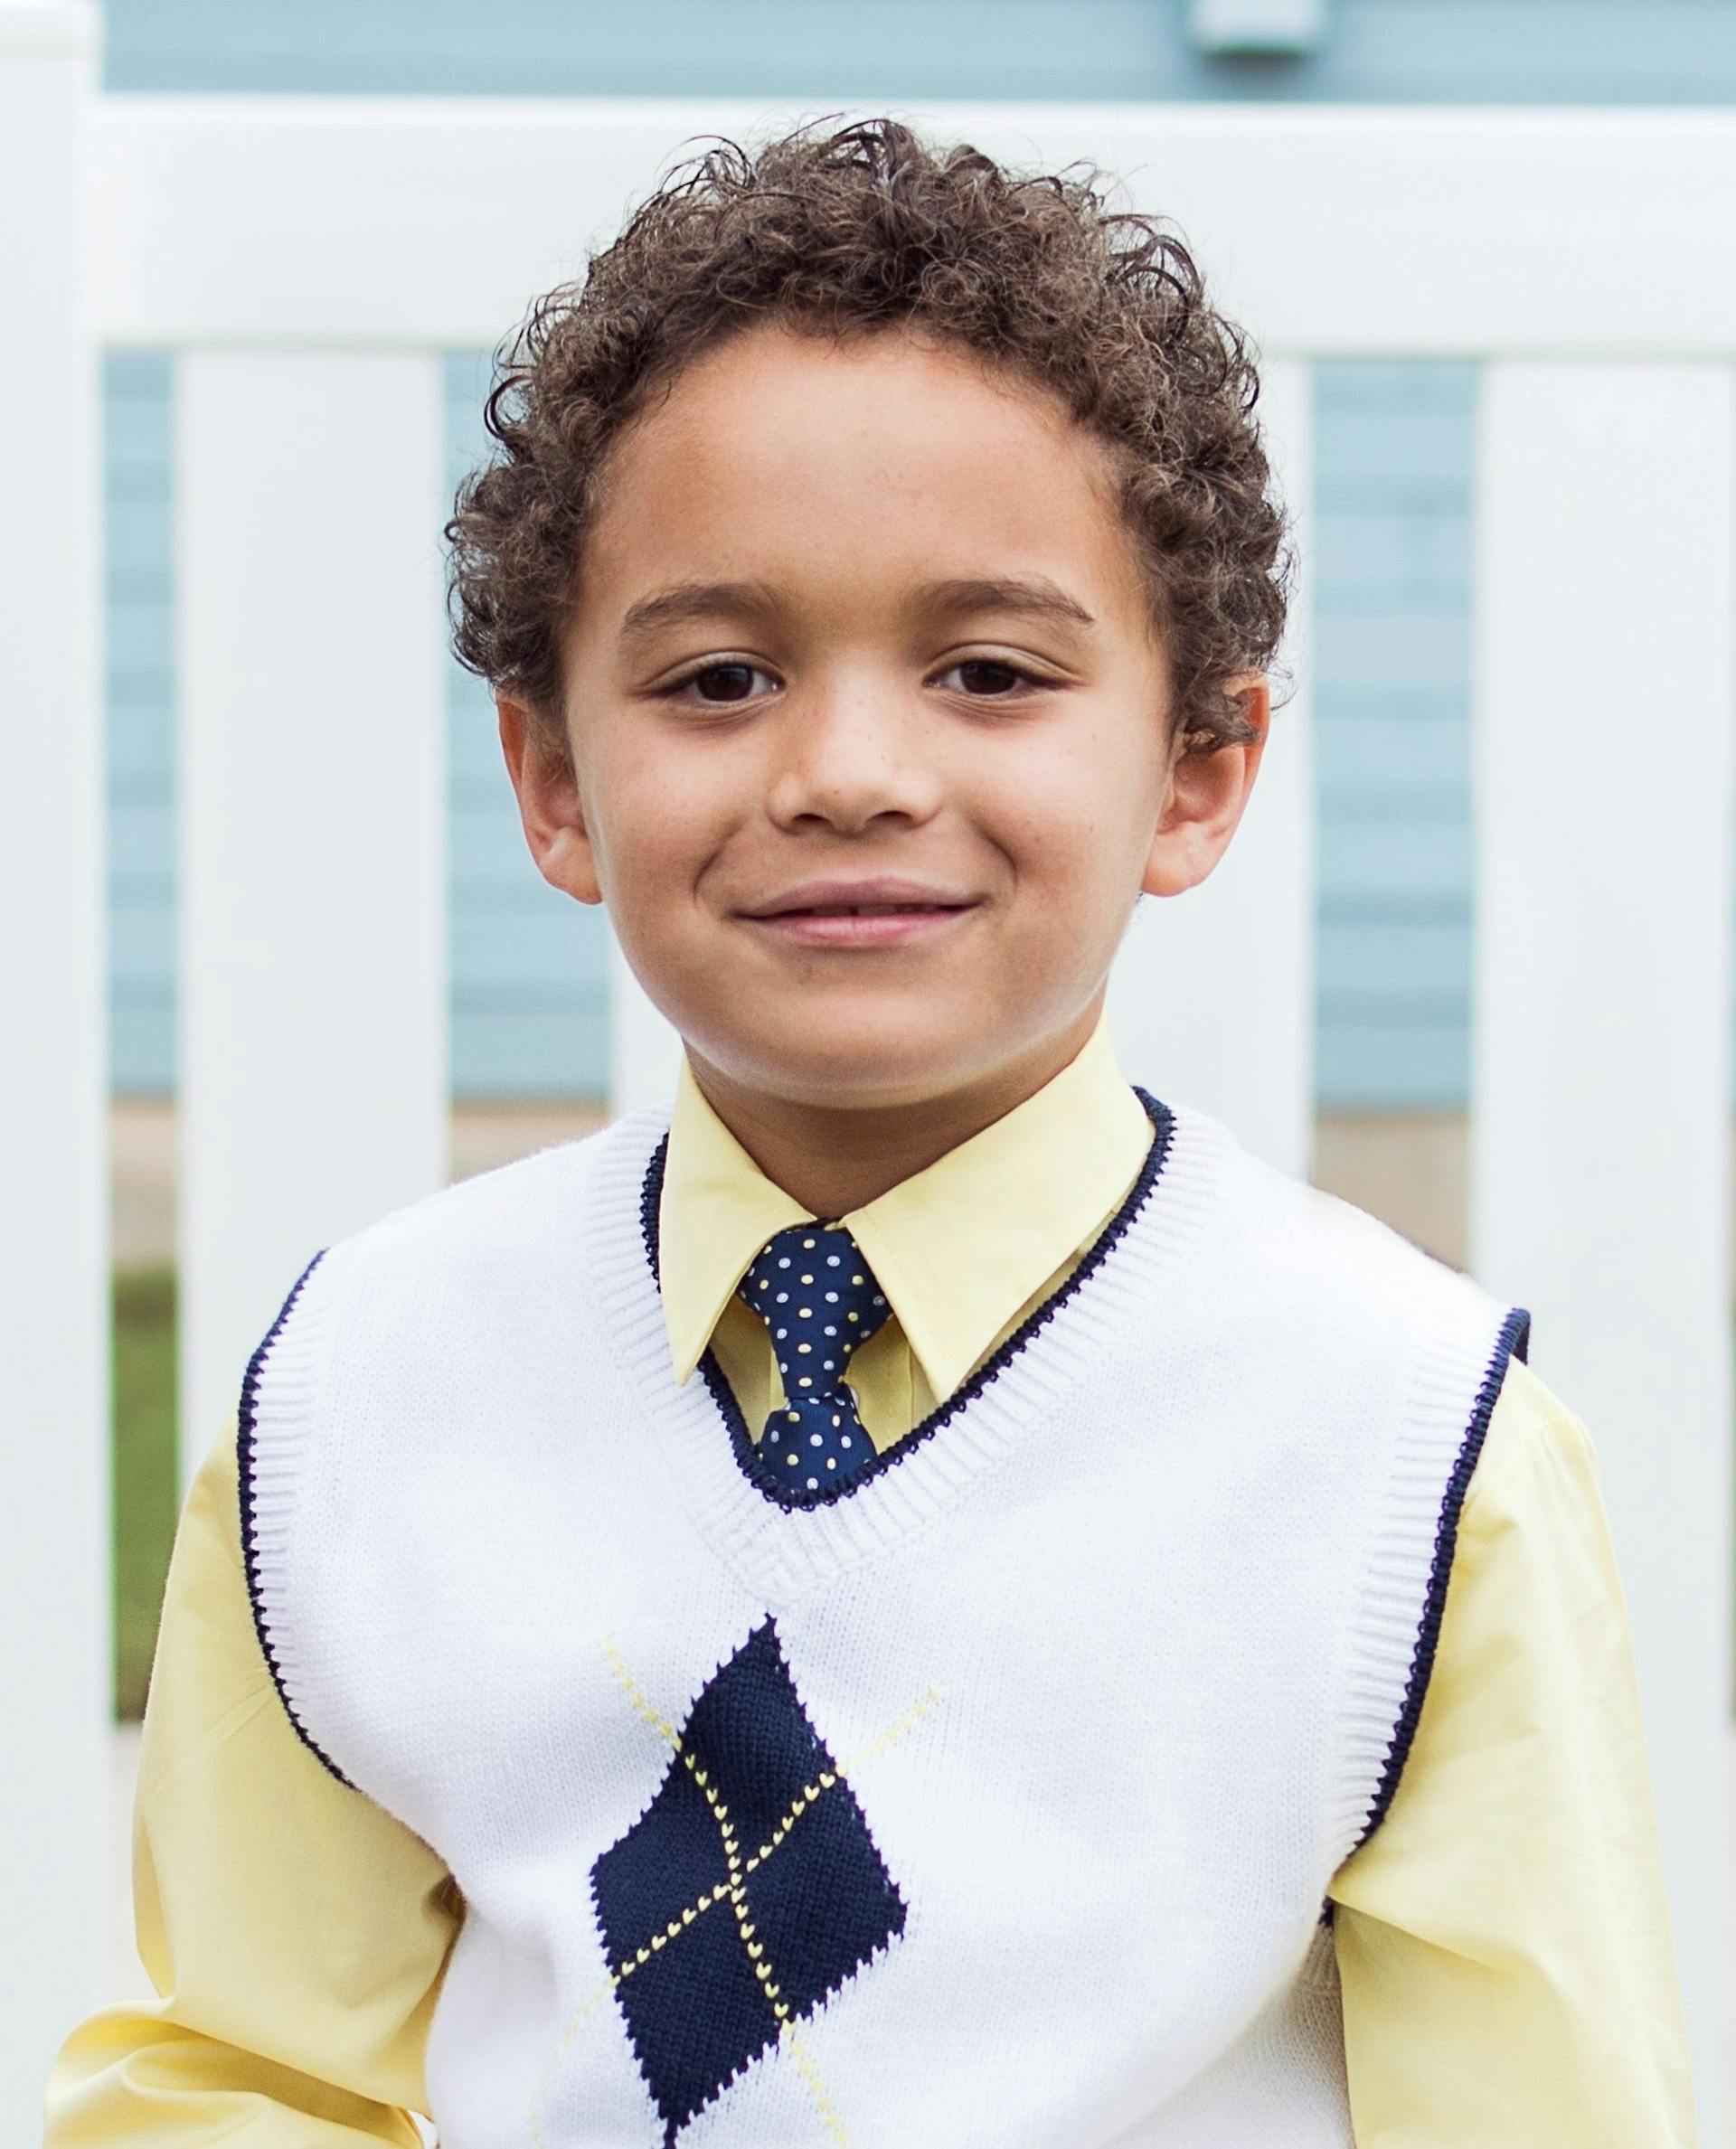 Un jeune garçon souriant à l'appareil photo | Source : Pexels